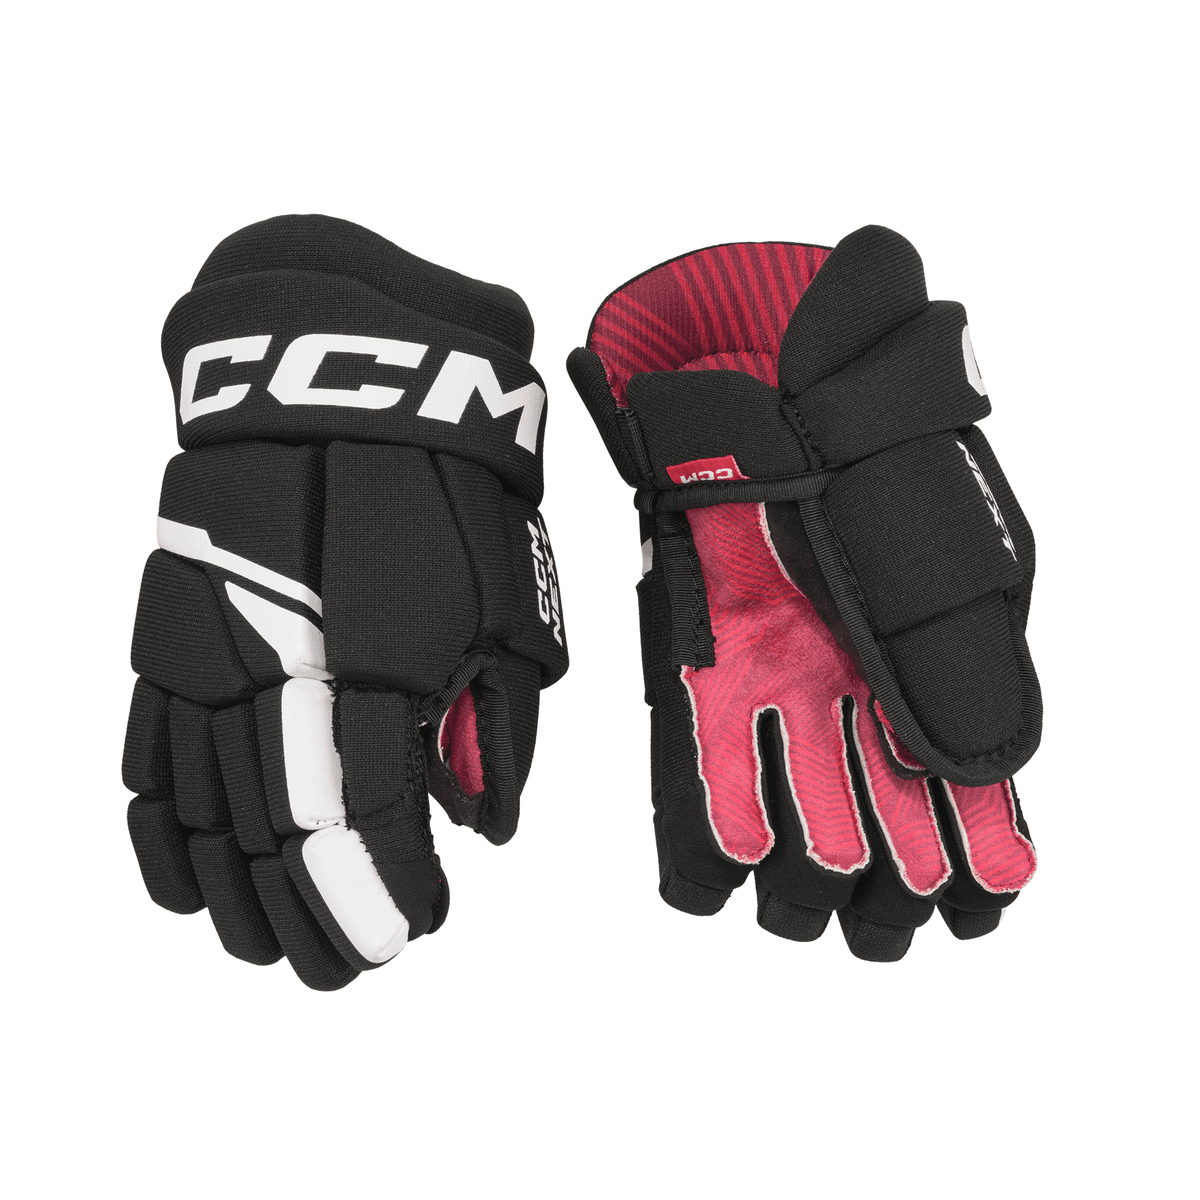 CCM Next Hockey Gloves Youth